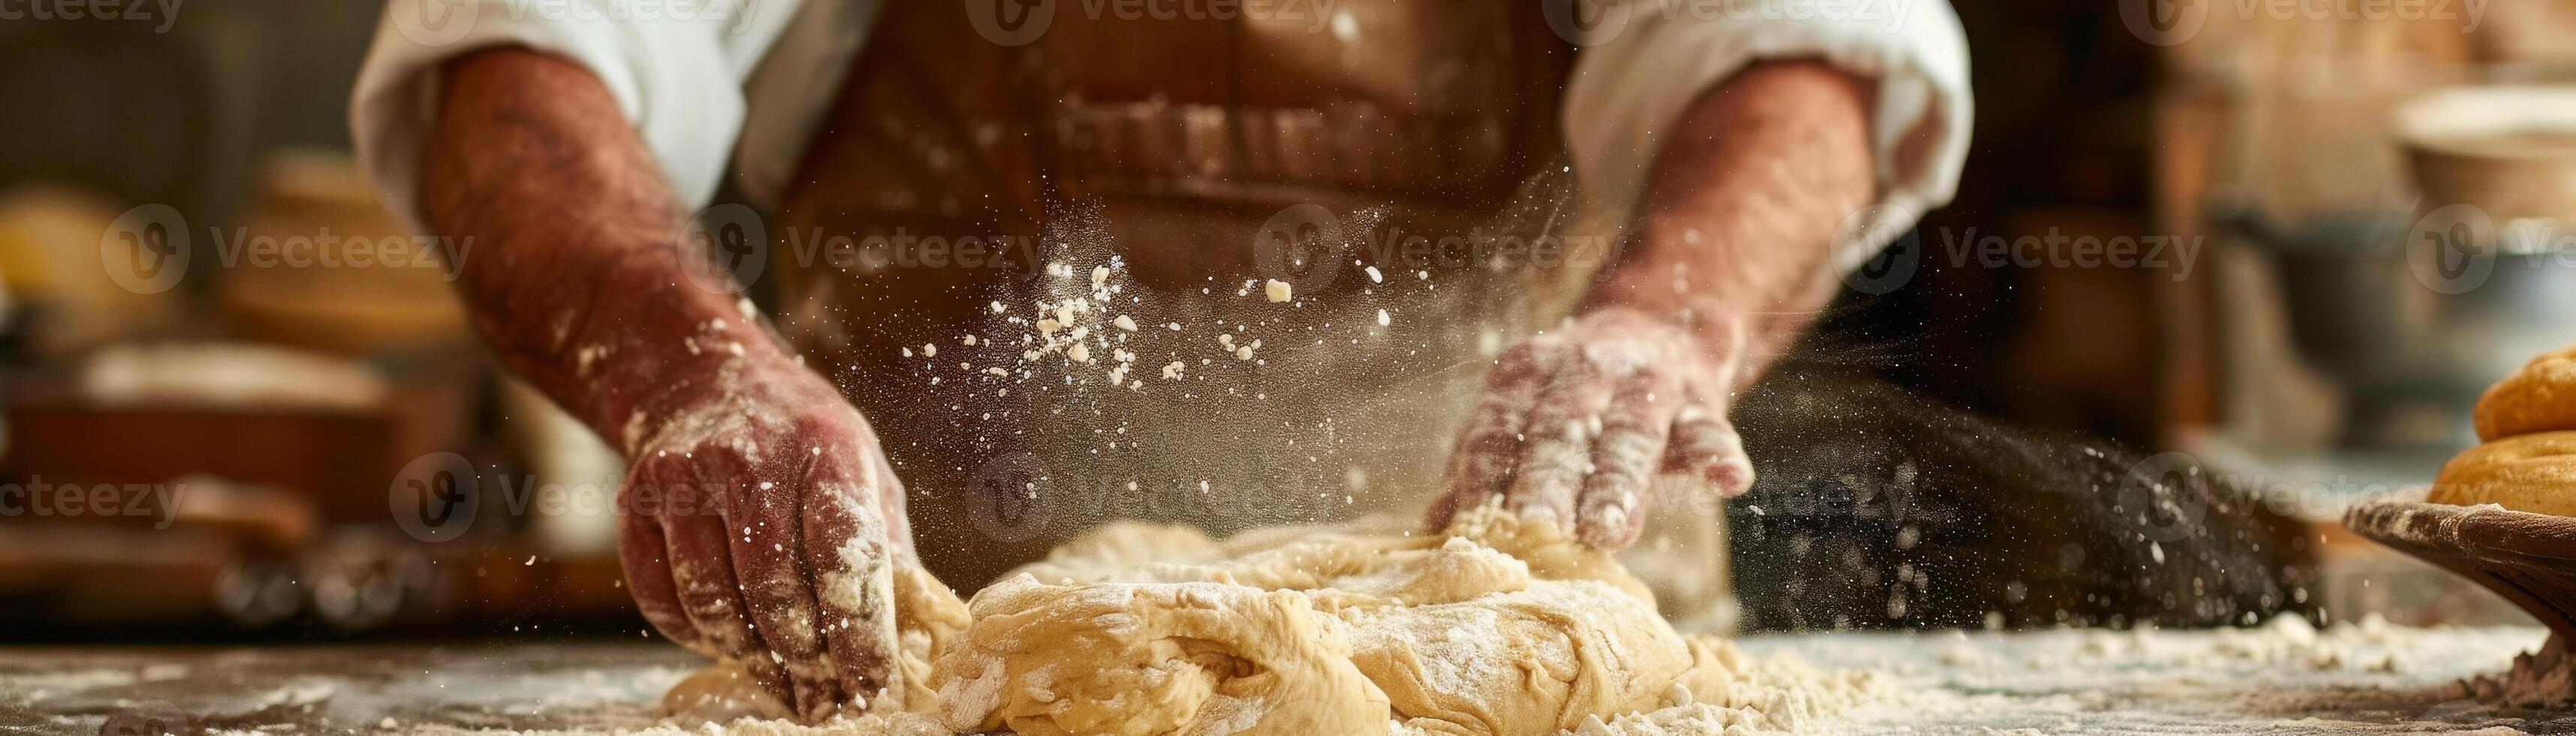 de cerca de un panadería manos trabajando con harina y Fresco un pan masa en un de madera superficie foto